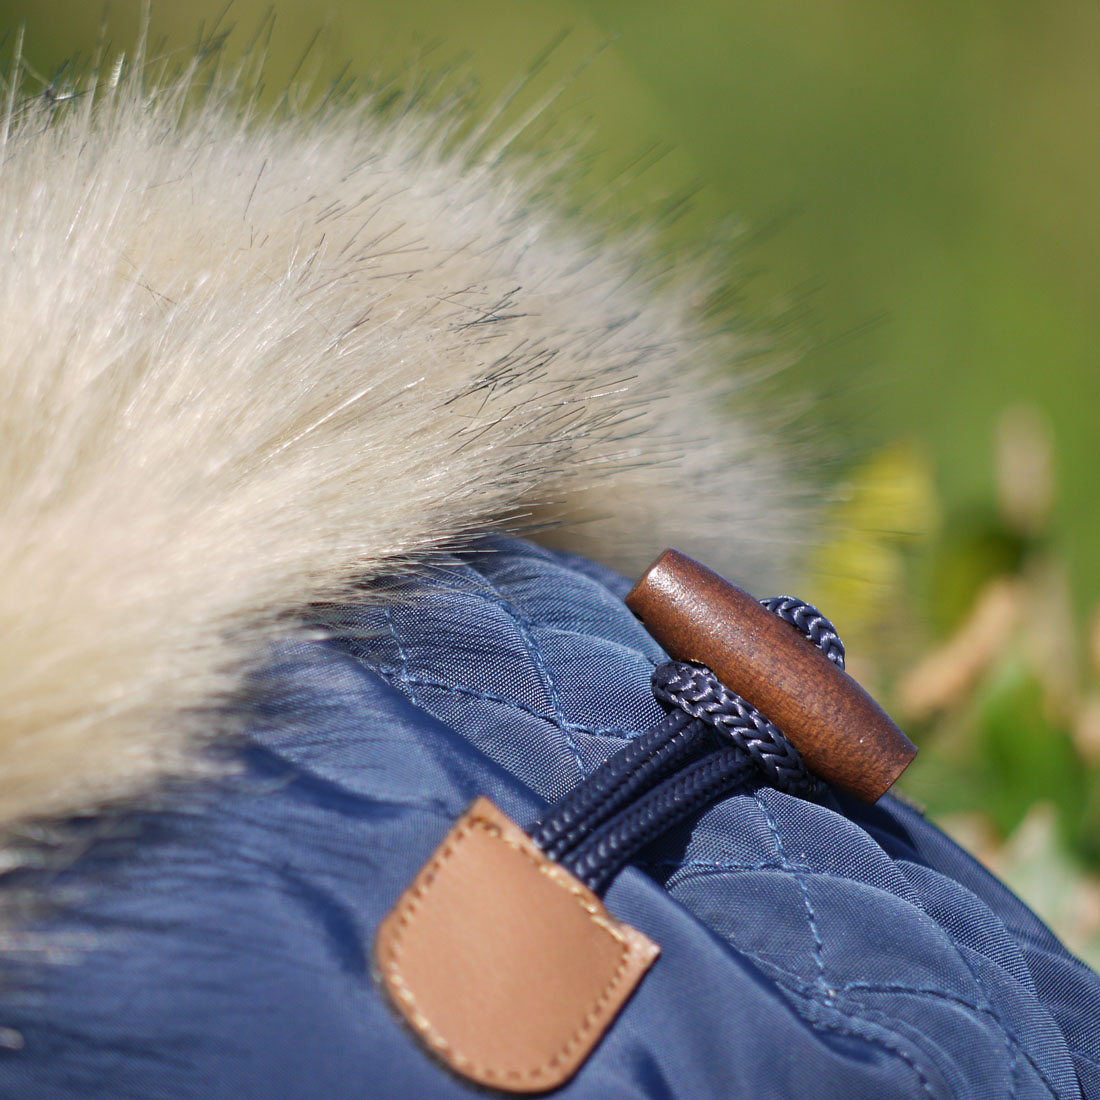 dogfashion jacket royal blue size 48